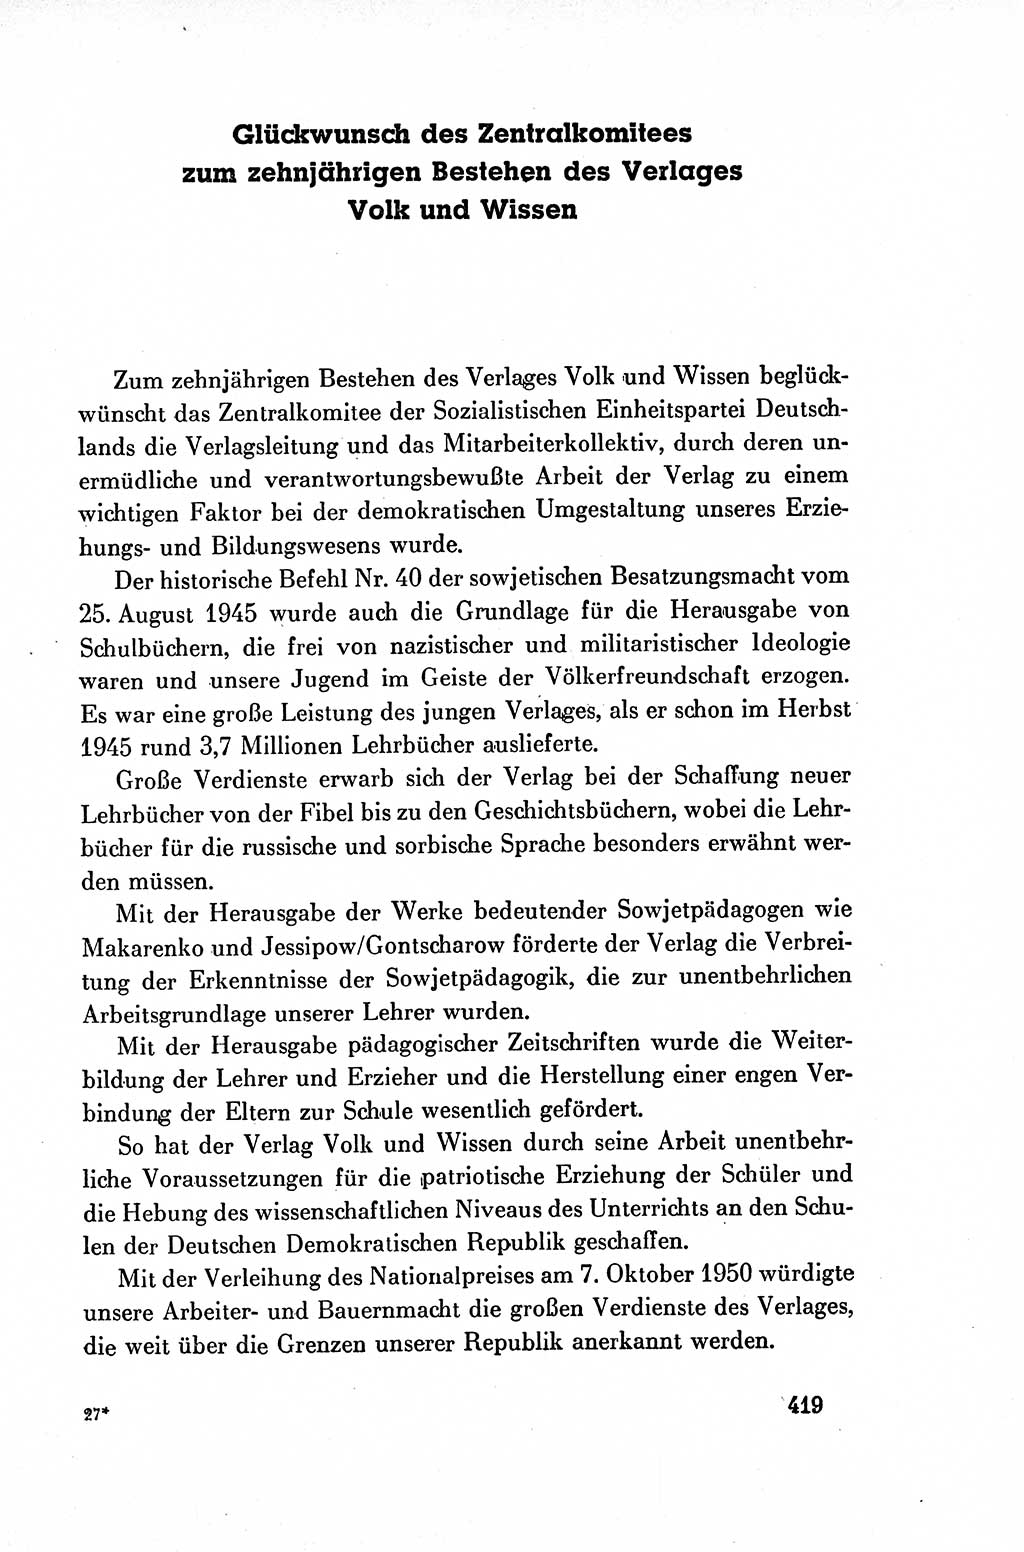 Dokumente der Sozialistischen Einheitspartei Deutschlands (SED) [Deutsche Demokratische Republik (DDR)] 1954-1955, Seite 419 (Dok. SED DDR 1954-1955, S. 419)